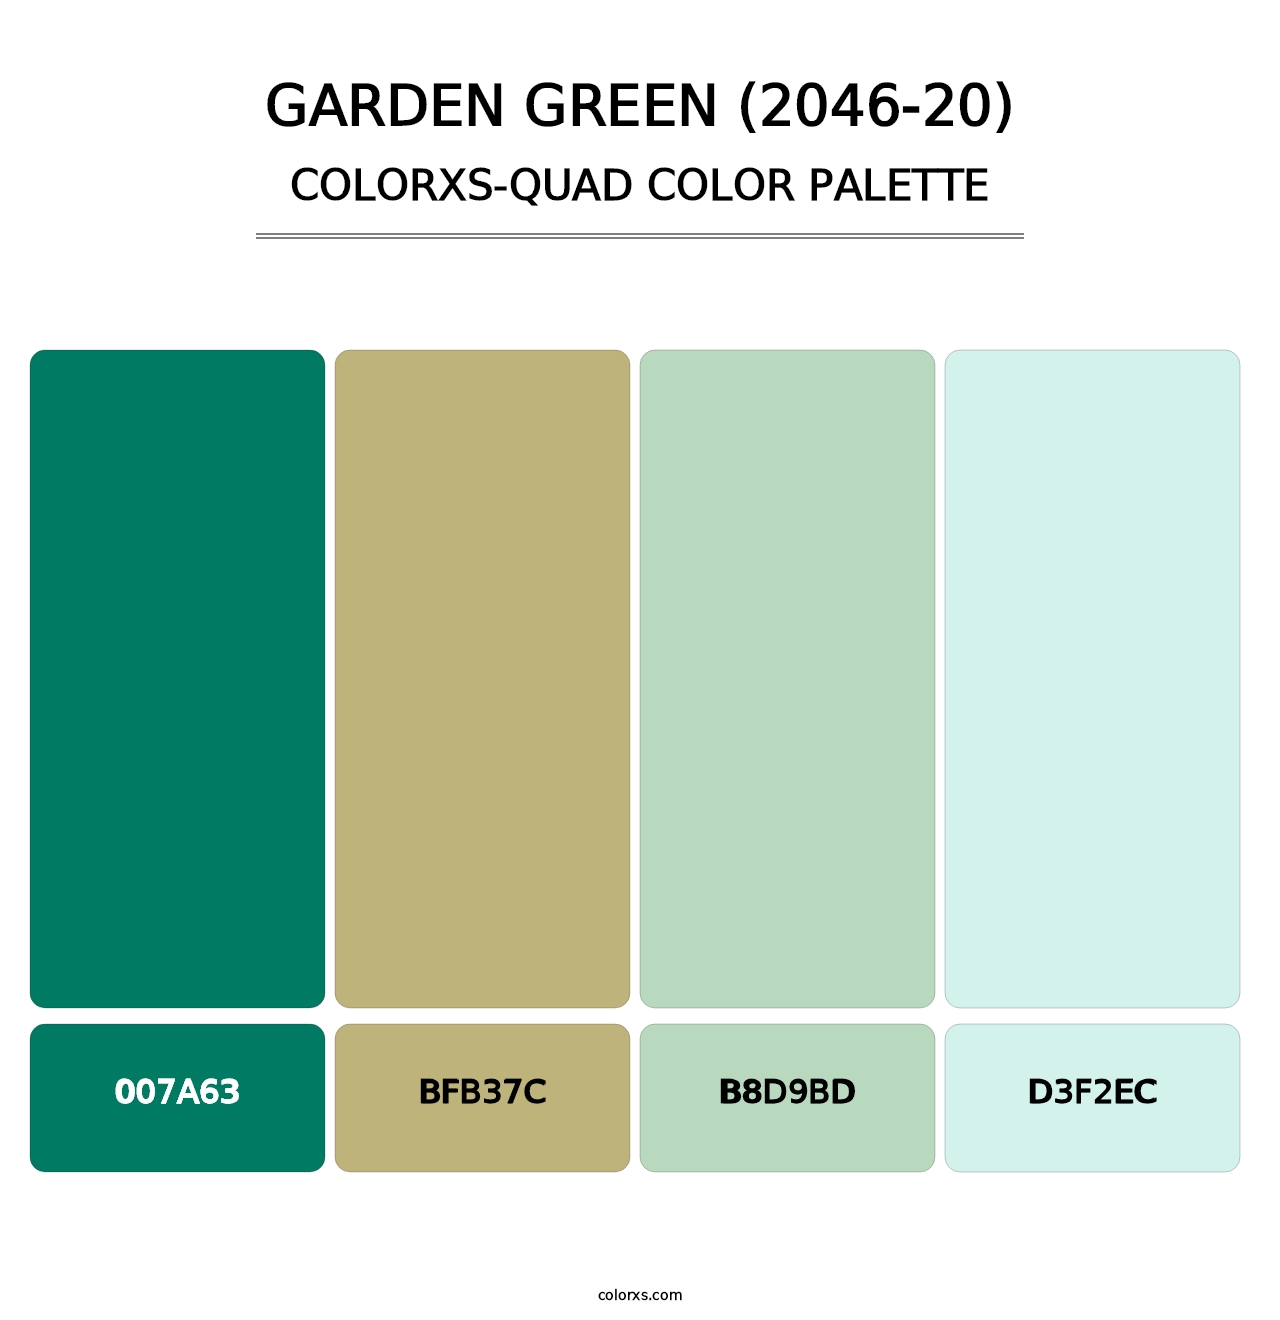 Garden Green (2046-20) - Colorxs Quad Palette